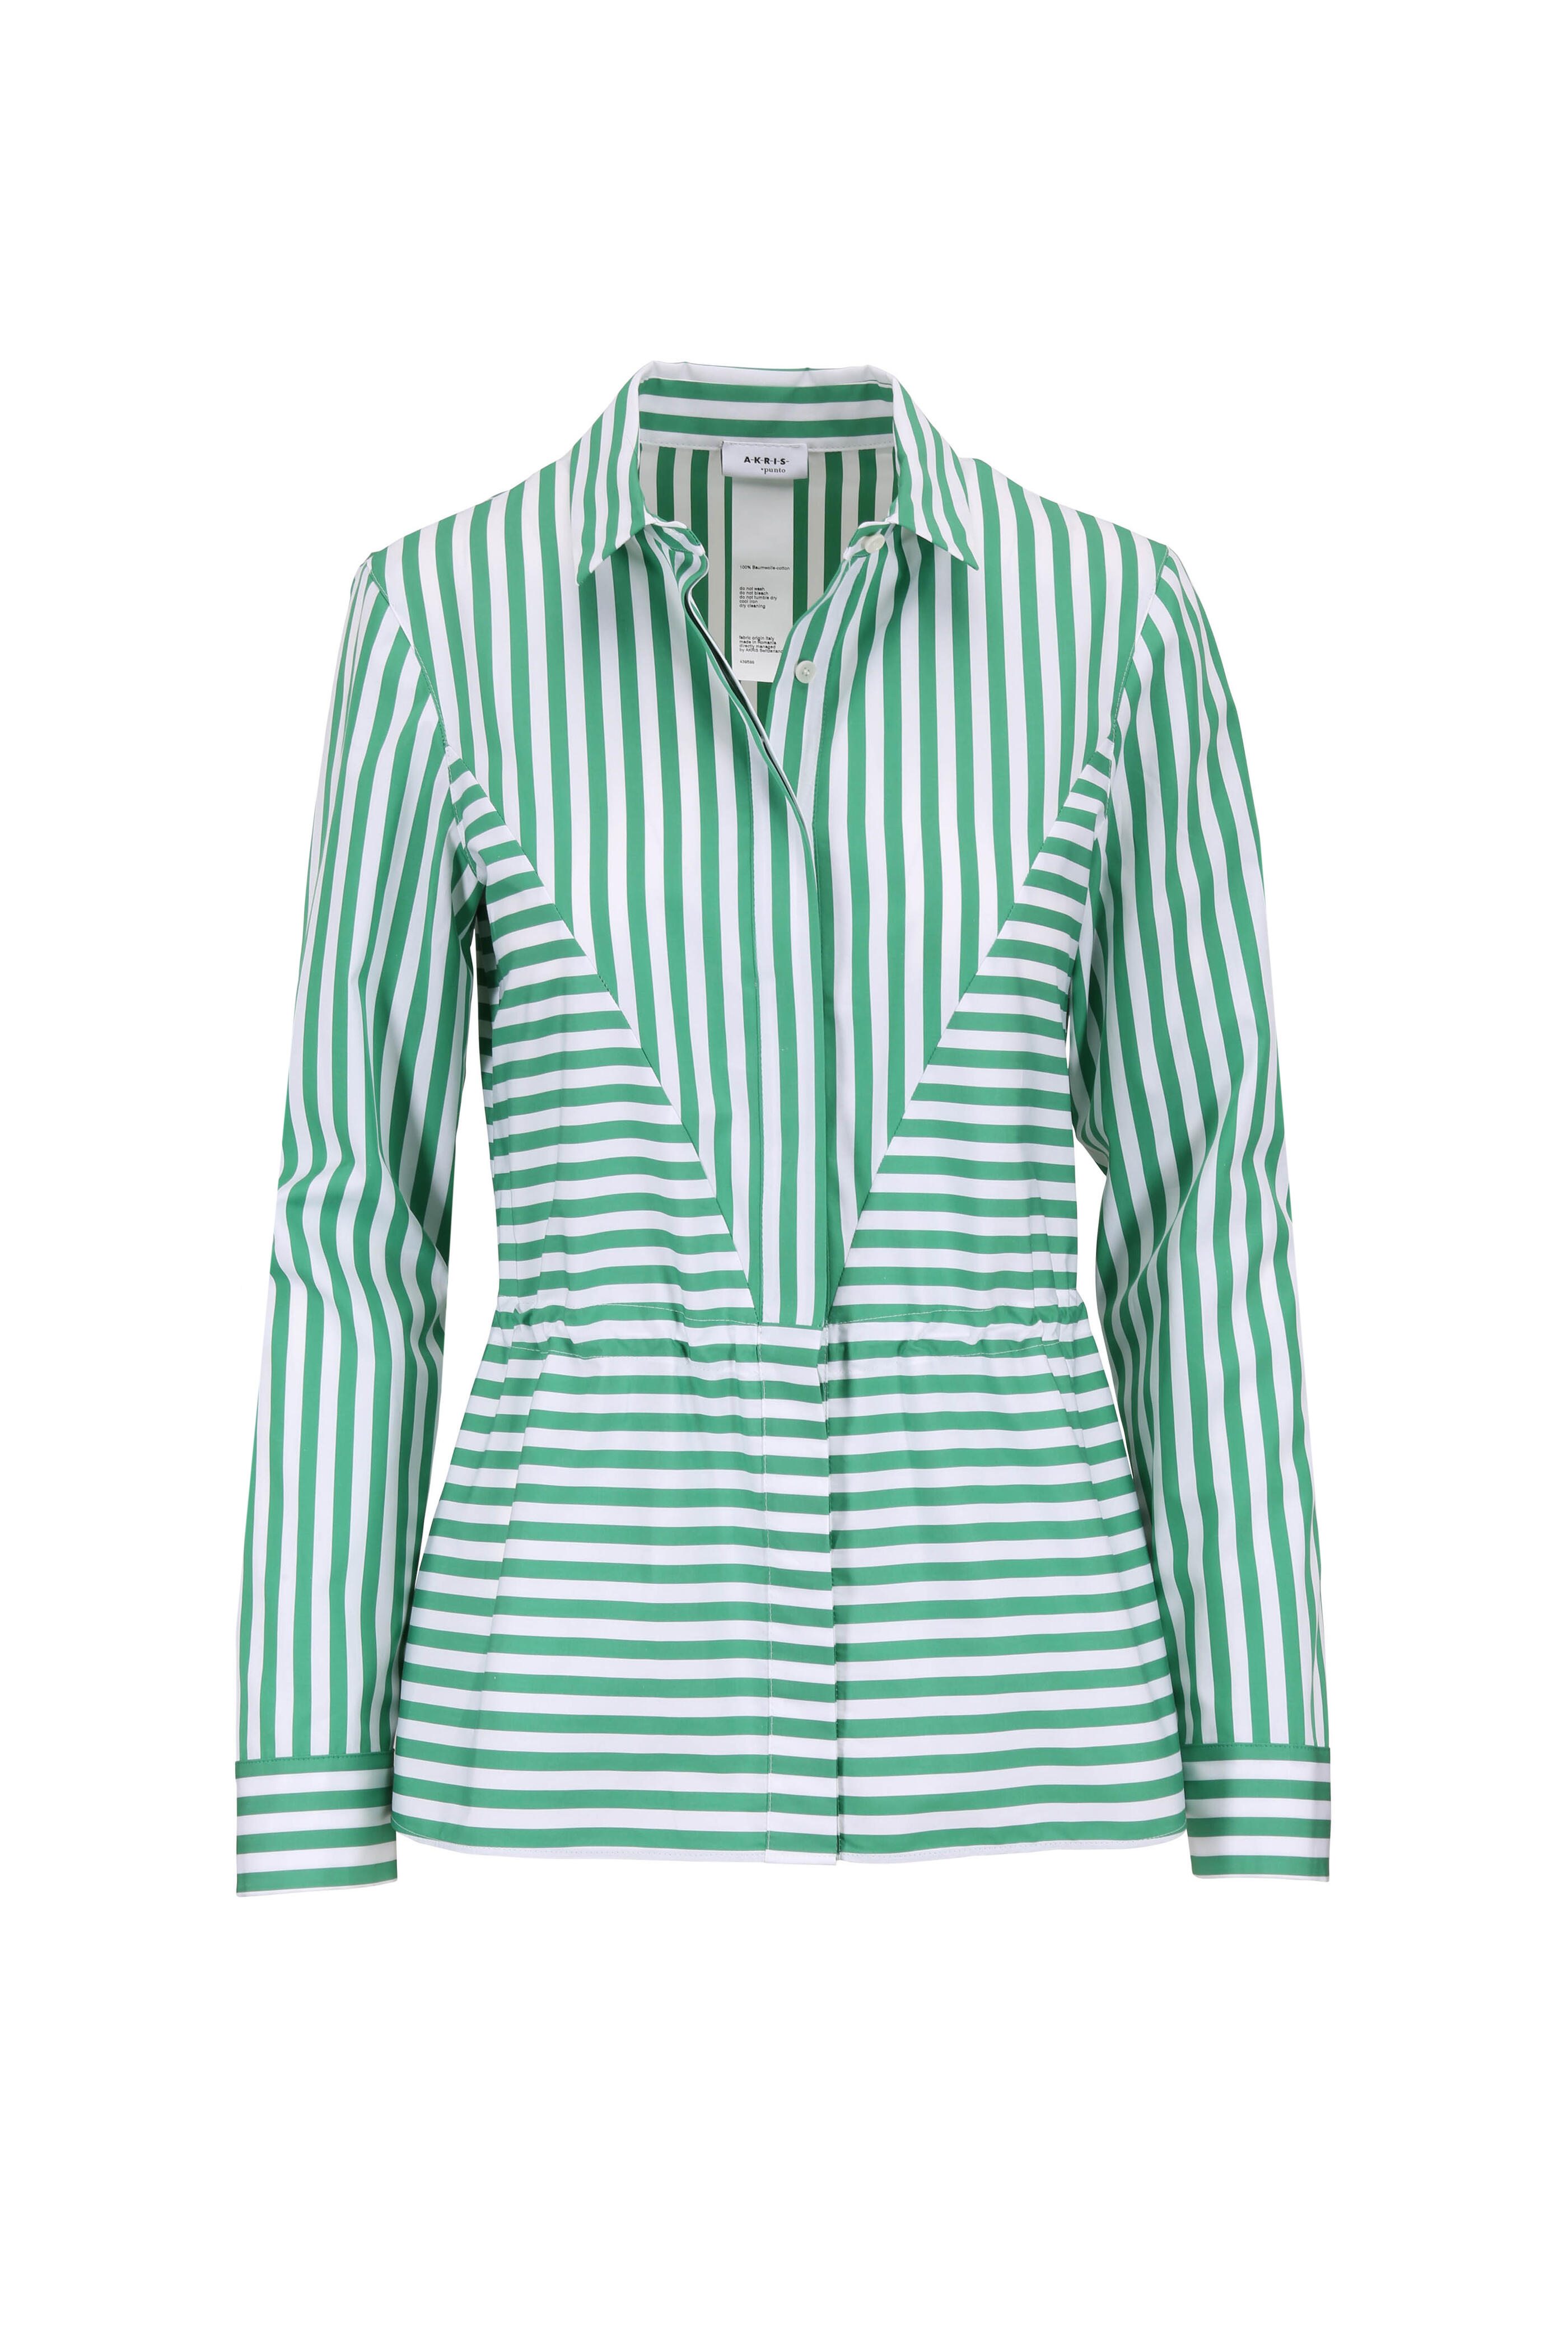 Akris Punto - Green & White Striped Drawstring Waist Blouse